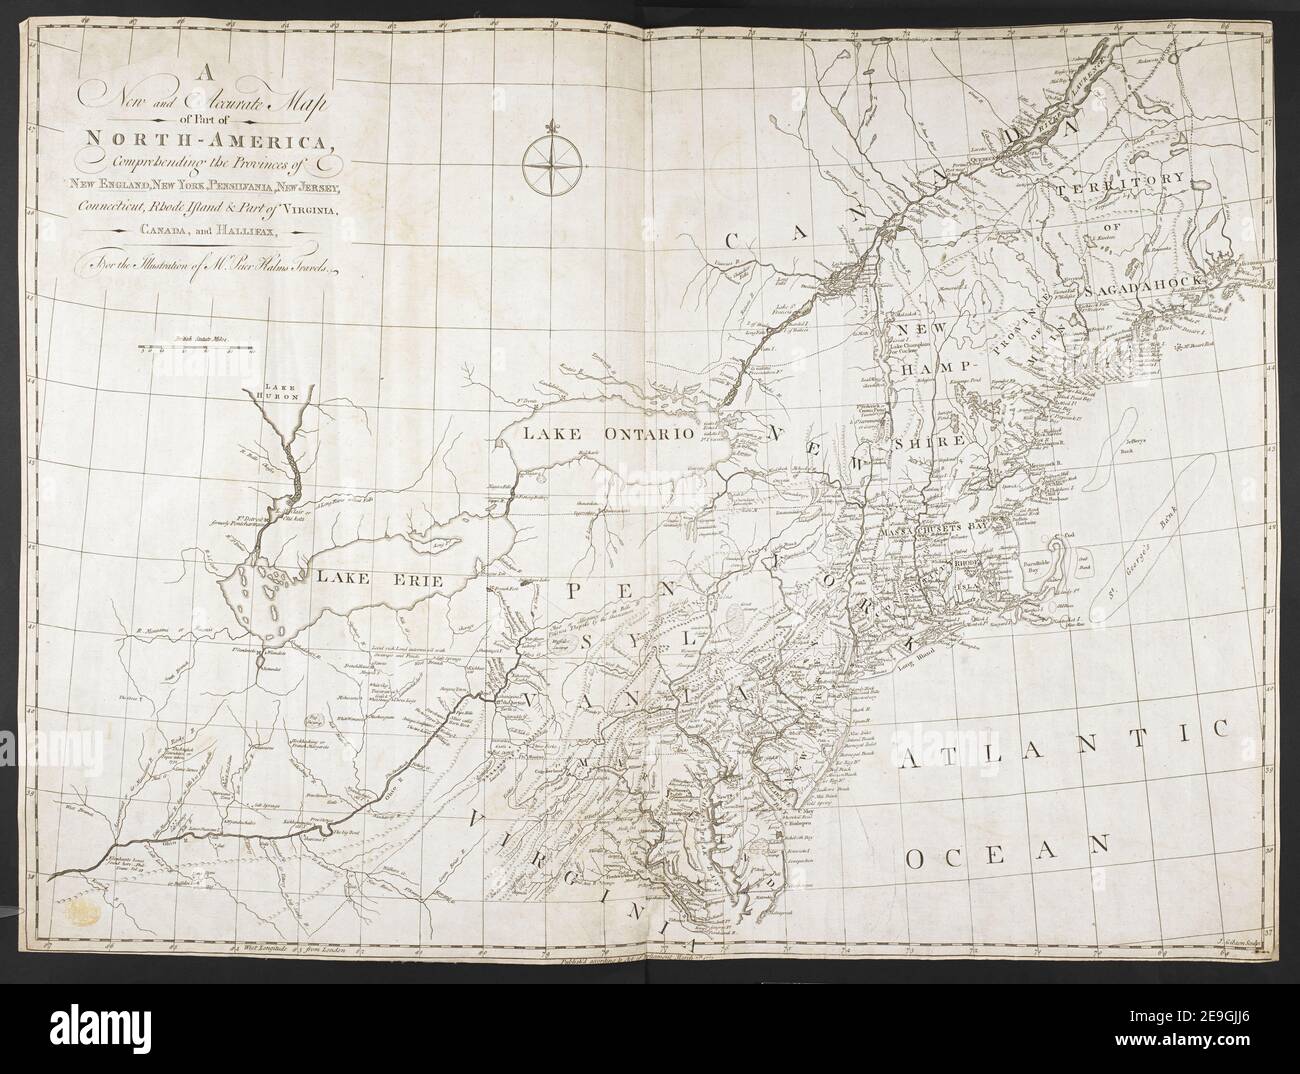 A New and Accurate Map of part of NORTH AMERICA, comprehensing the Provinces of NEW ENGLAND, NEW YORK, PENSILVANIA, NEW JERSEY, Connecticut, Rhode Island & Part of VIRGINIA, CANADA, and HALLIFAX Author Gibson, J. 120,13. Erscheinungsort: [London] Verlag: Veröffentlicht gemäß Gesetz des Parlaments, Erscheinungsdatum: März 7th 1771. Objekttyp: 1 Karte Medium: Kupferstich Maße: 57 x 76 cm ehemaliger Besitzer: George III, König von Großbritannien, 1738-1820 Stockfoto